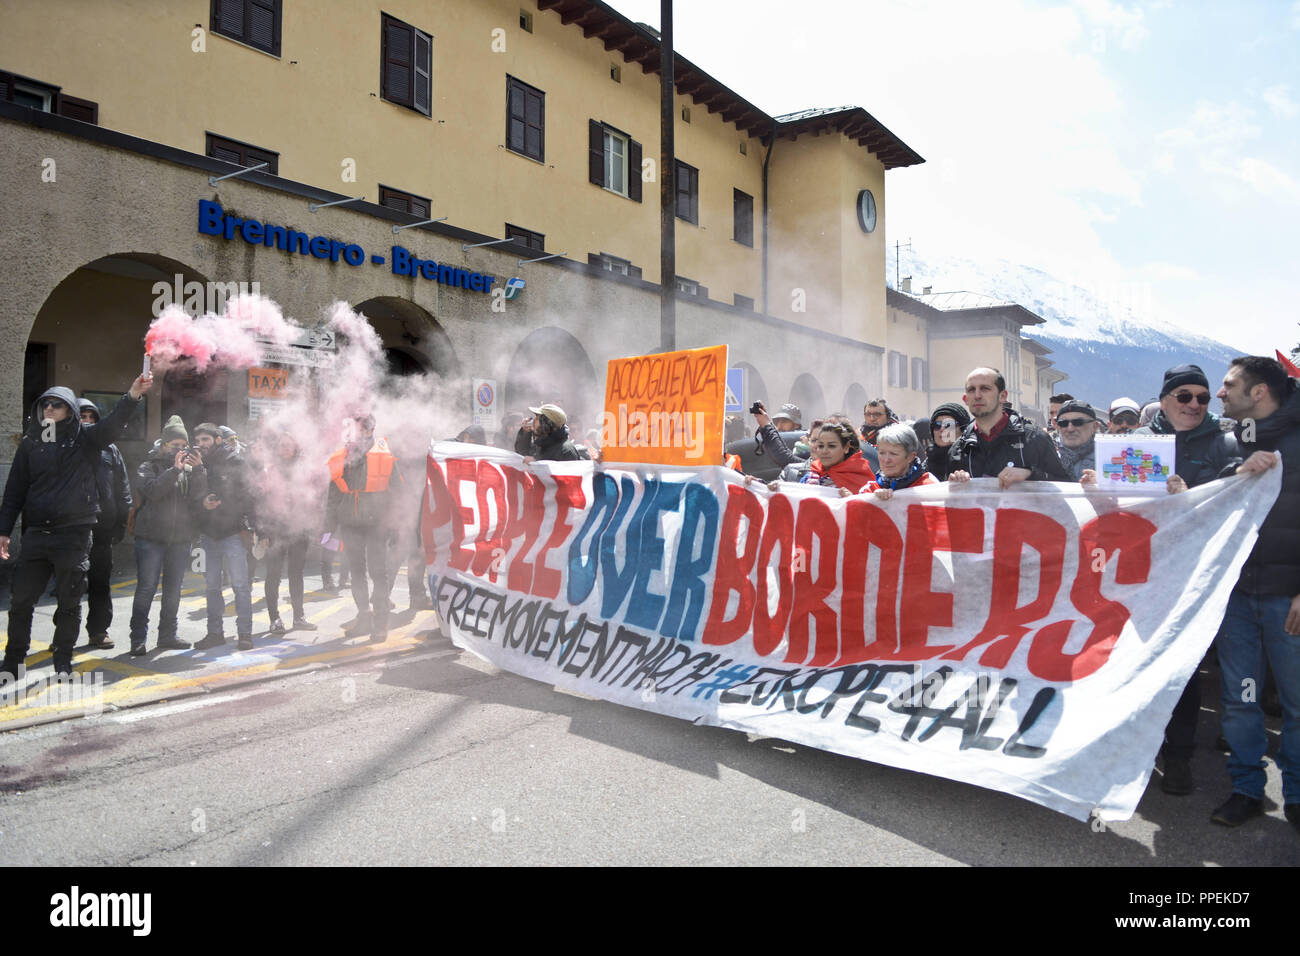 Die Demonstranten halten ein Banner mit Menschen die Worte "über Grenzen". Italienischen Demonstranten protestieren am 04.24.2016 gegen die geplante Grenzkontrollen von Österreich. Stockfoto